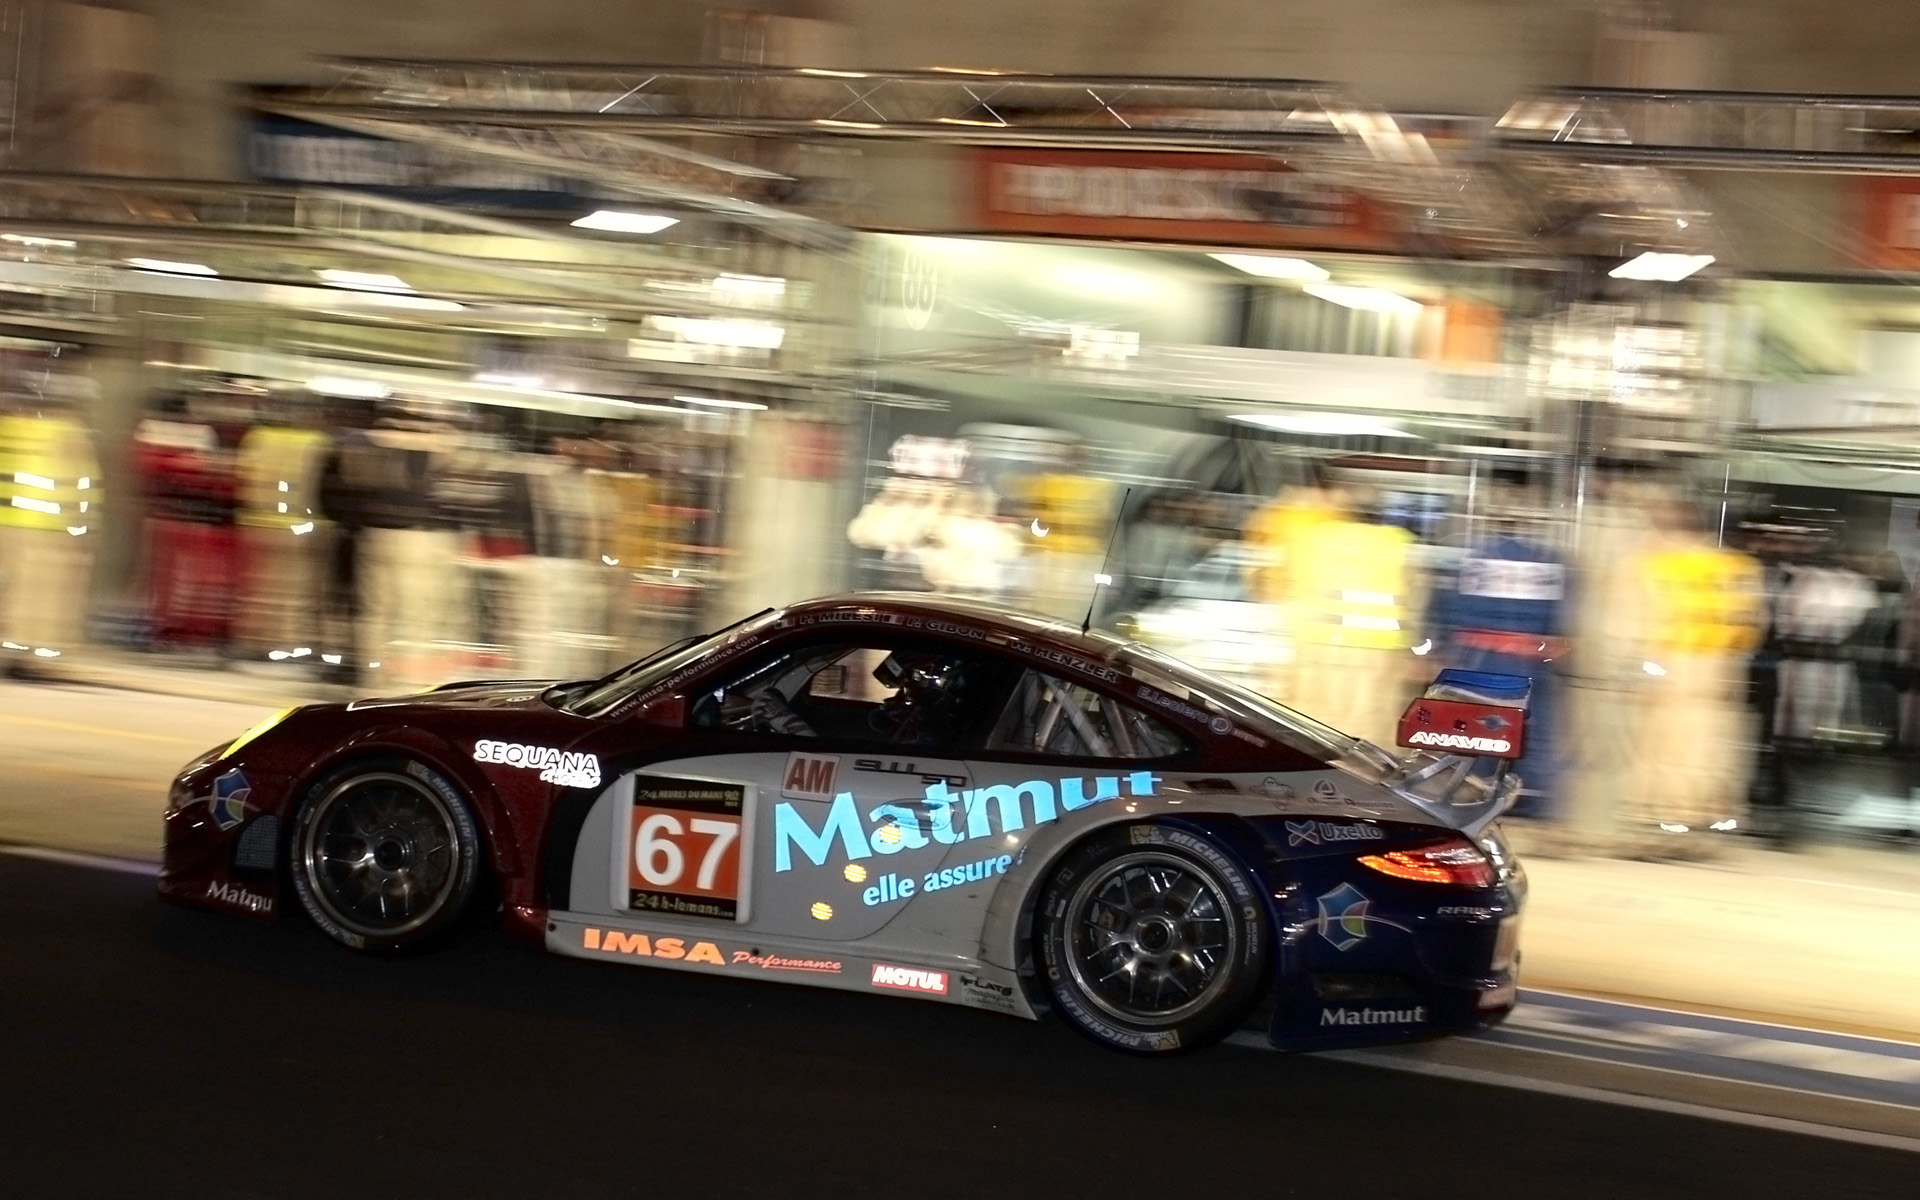 2013, Porsche, 911, Rsr, Le mans, Race, Racing, Da Wallpaper